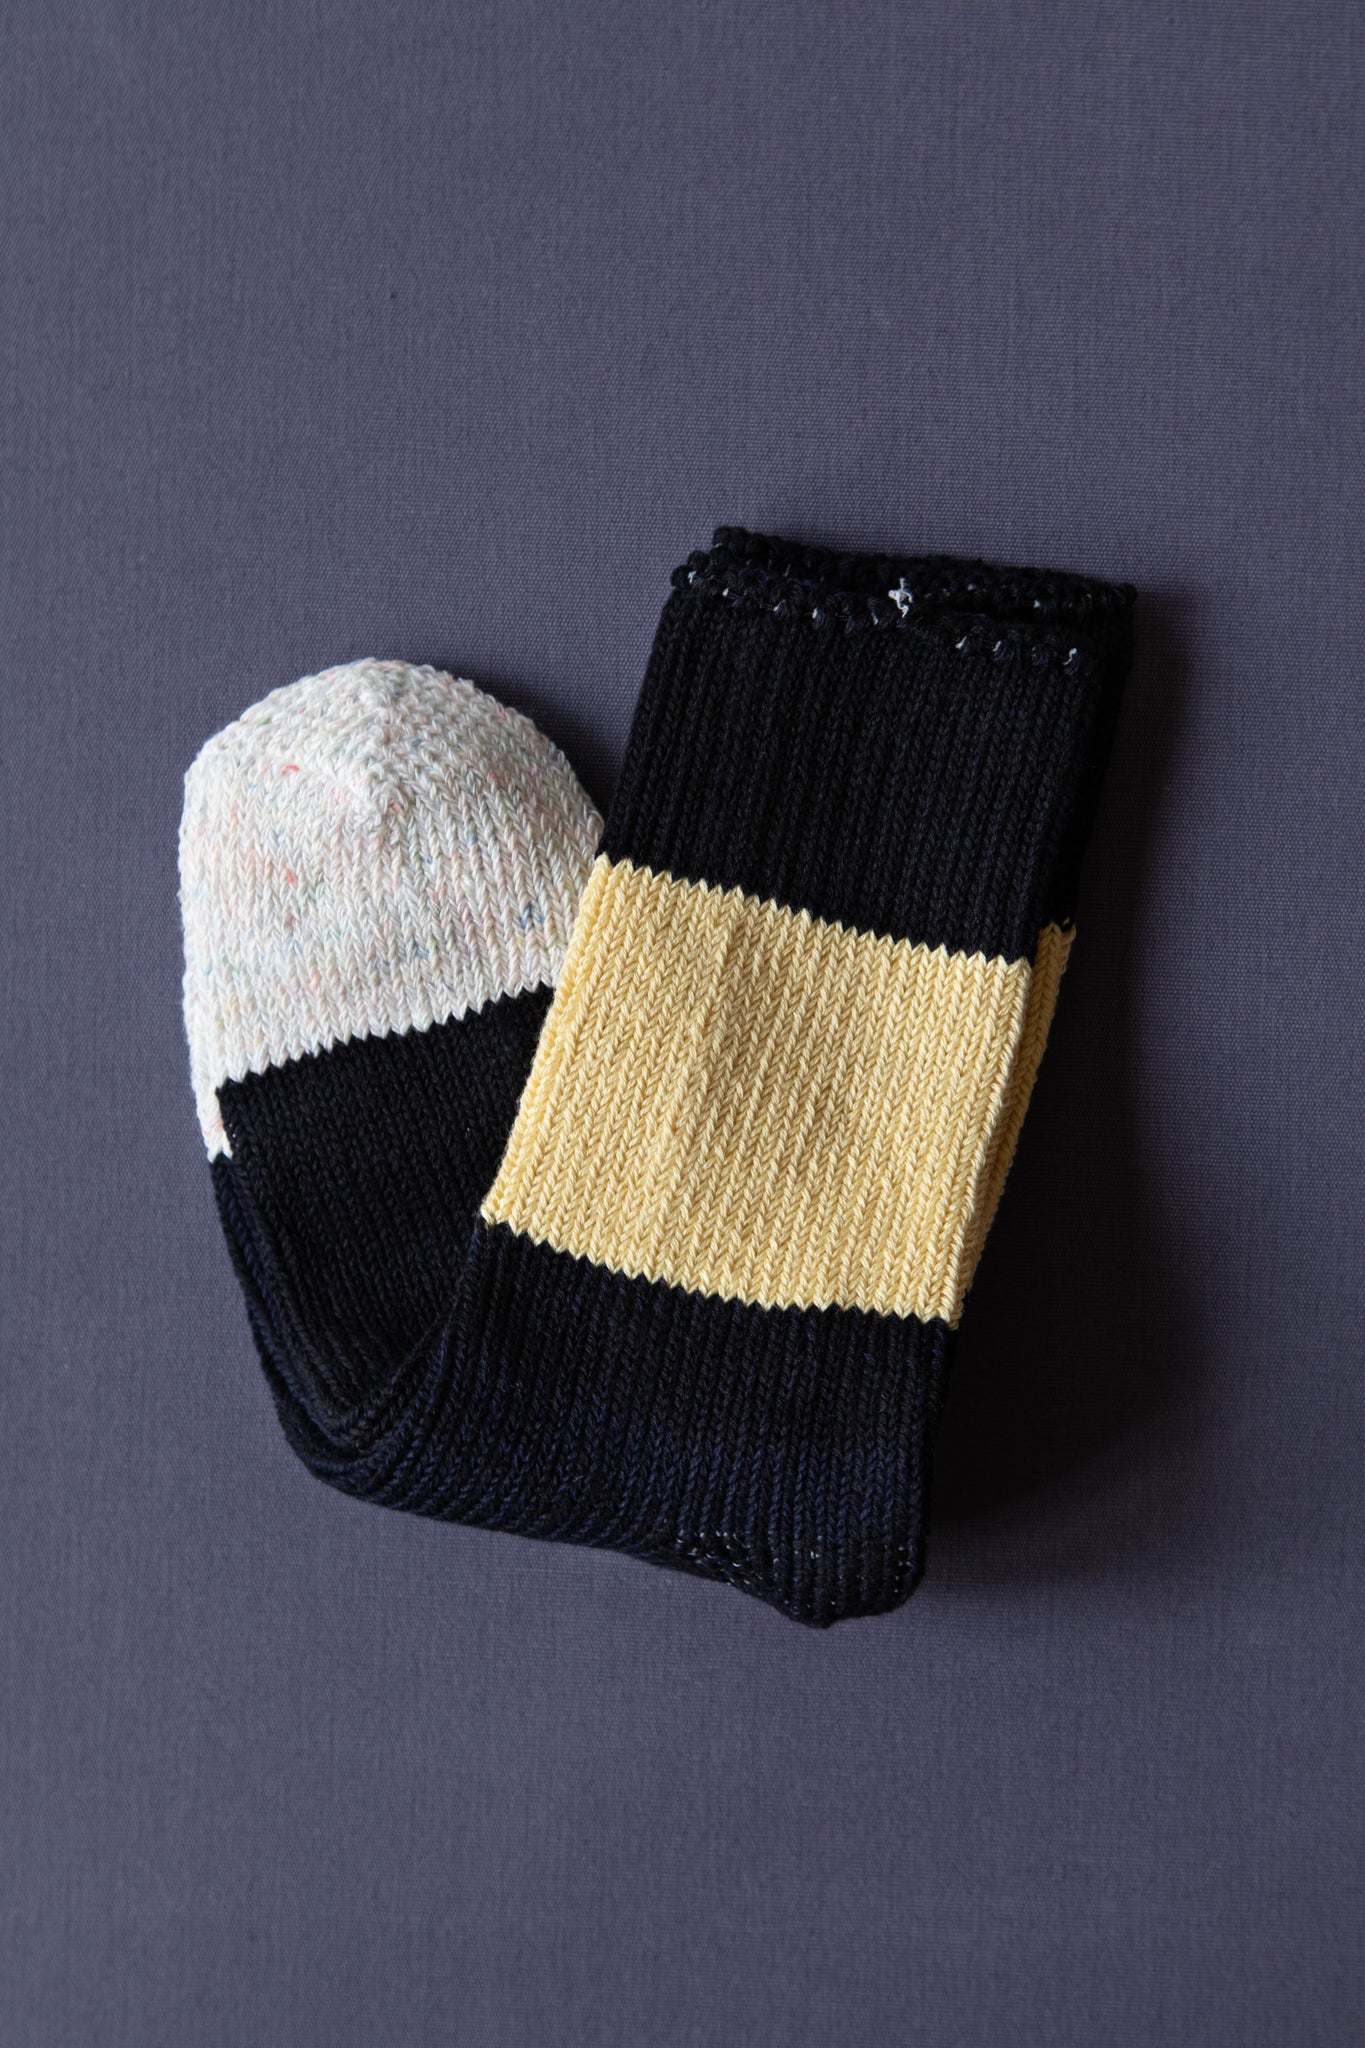 Aseedonclöud | Socks in Black & Buttercup